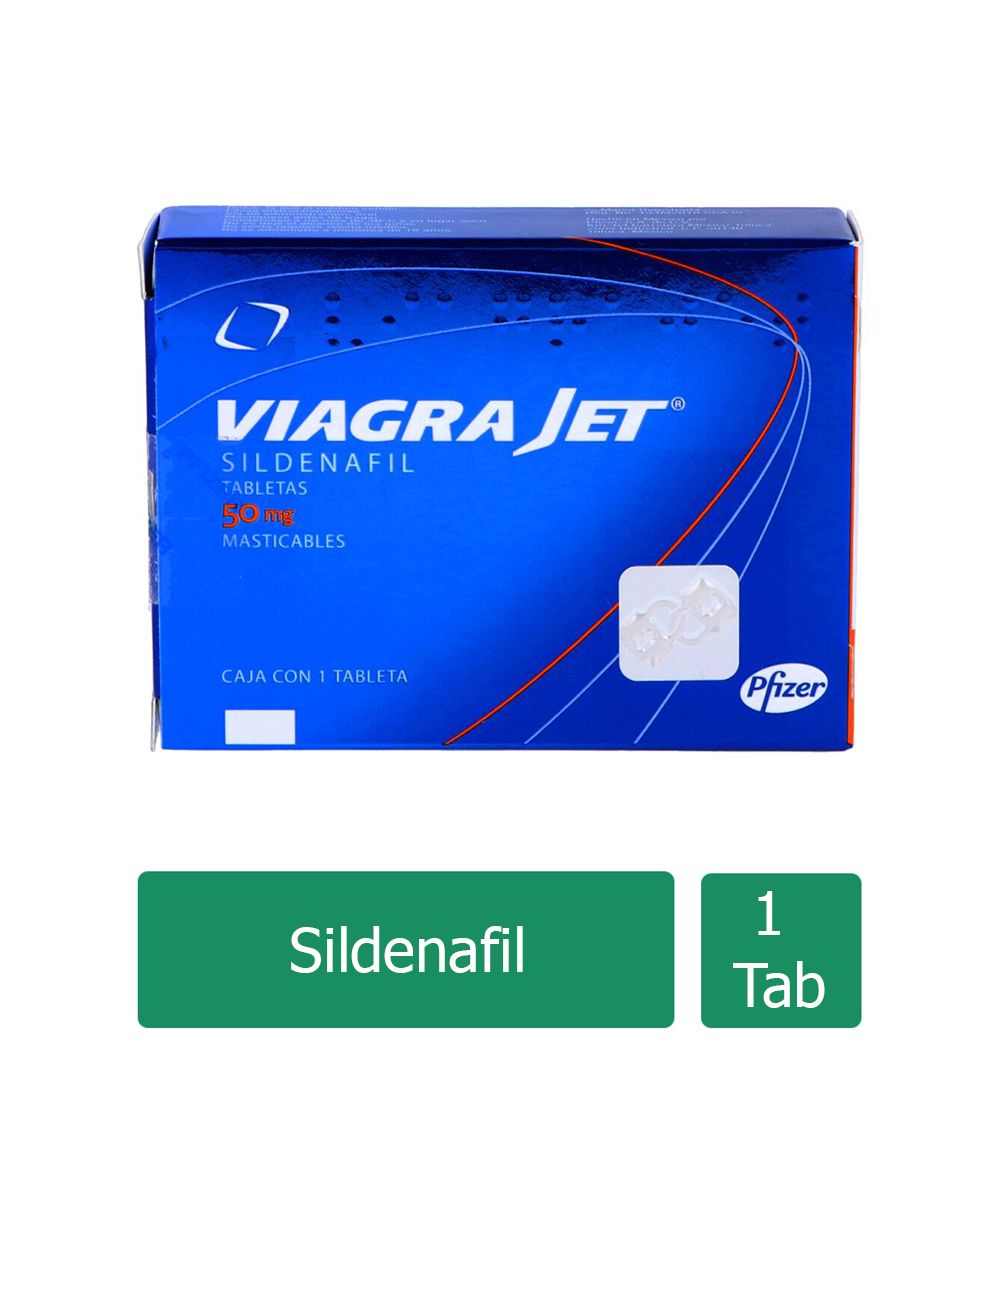 Viagra Jet 50 mg Caja Con 1 Tableta